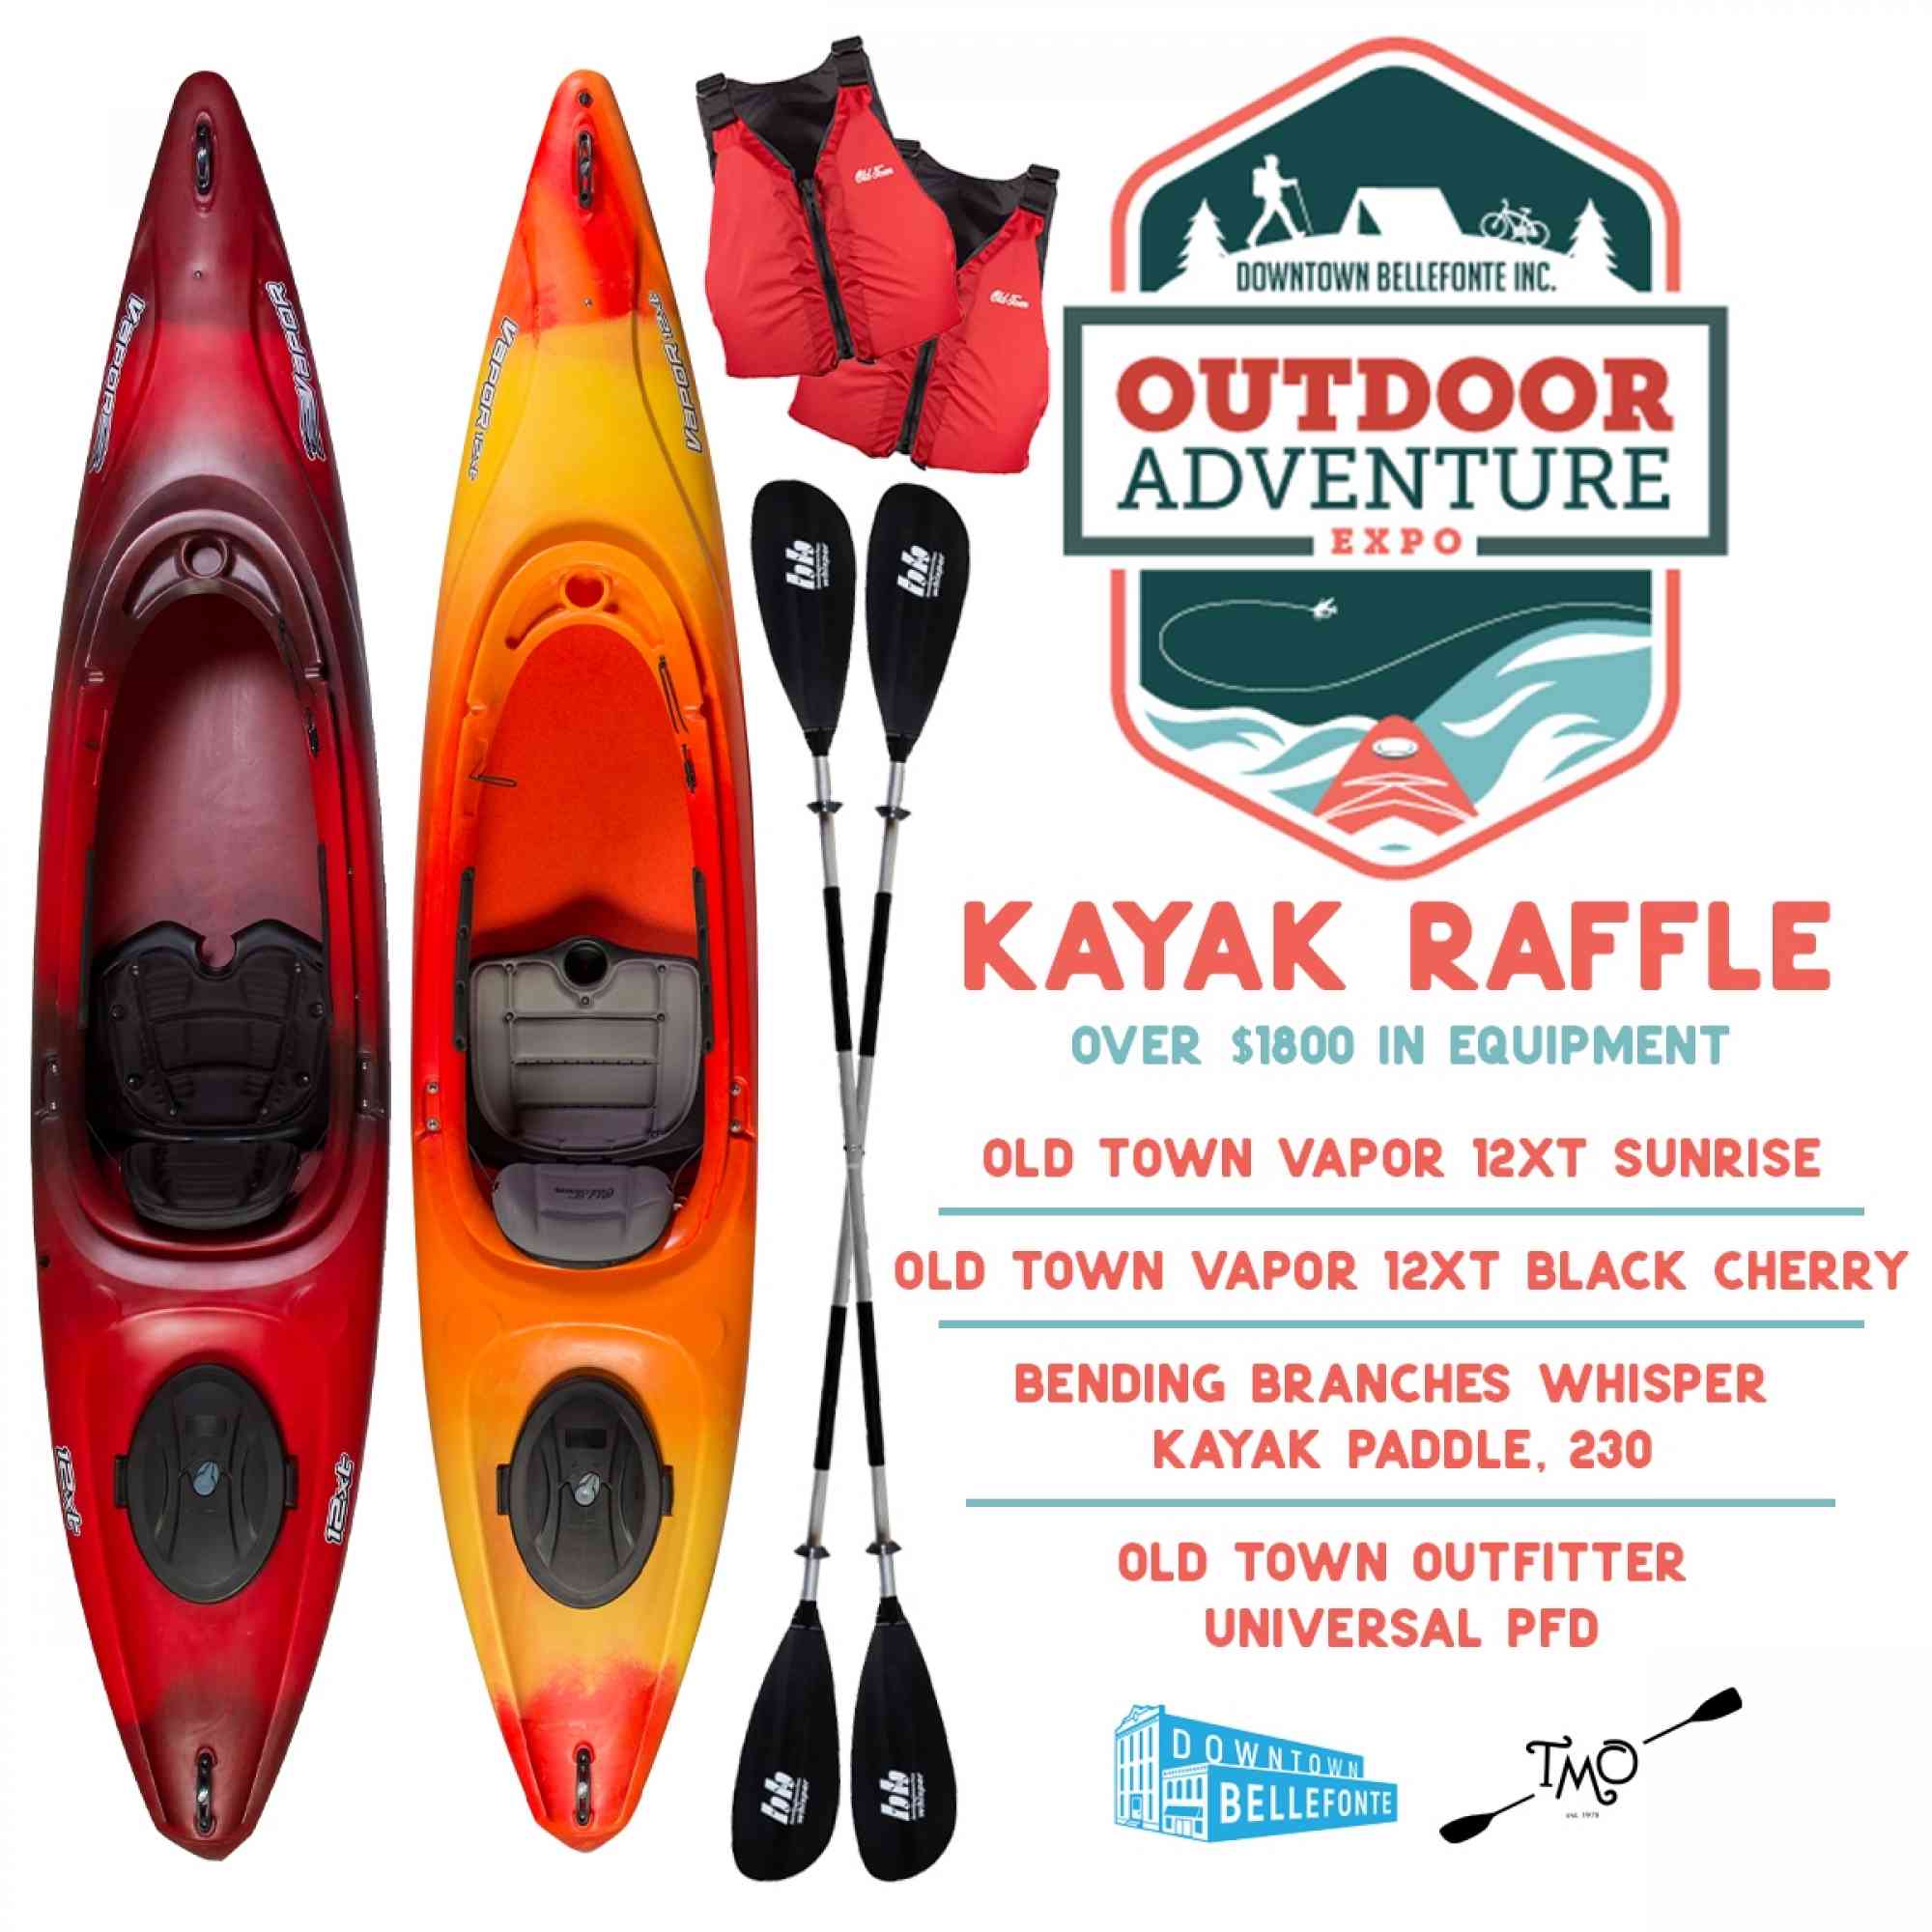 OAE Kayak poster